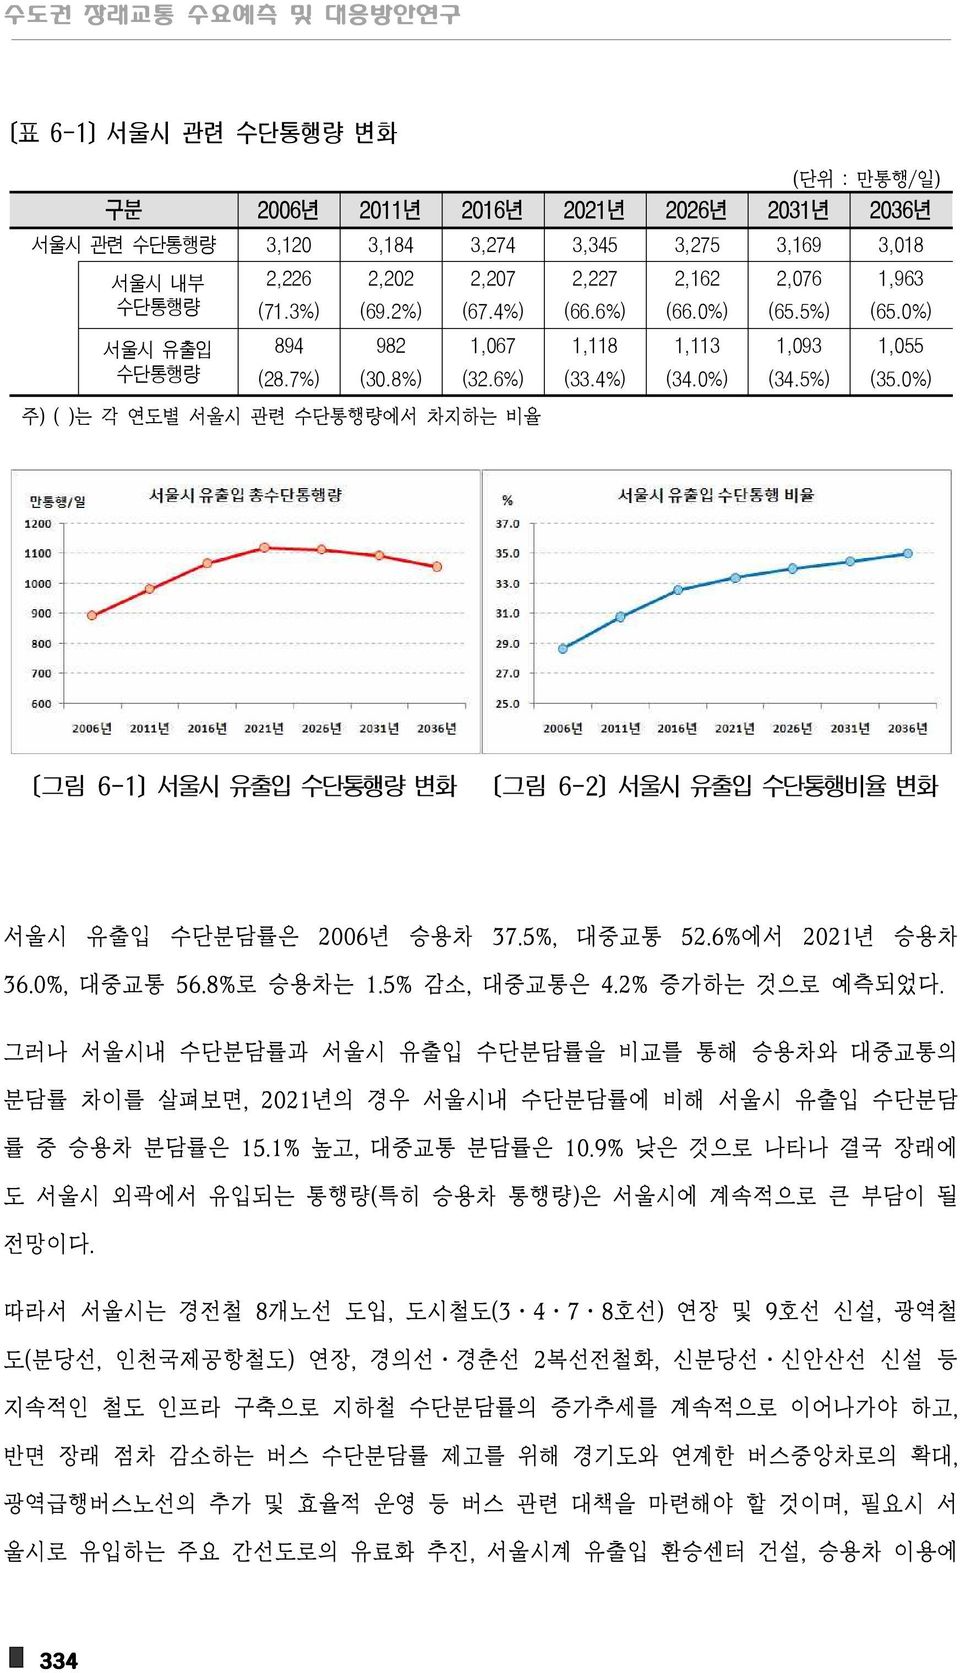 0%) 주) ( )는 각 연도별 서울시 관련 수단통행량에서 차지하는 비율 [그림 6-1] 서울시 유출입 수단통행량 변화 [그림 6-2] 서울시 유출입 수단통행비율 변화 서울시 유출입 수단분담률은 2006년 승용차 37.5%, 대중교통 52.6%에서 2021년 승용차 36.0%, 대중교통 56.8%로 승용차는 1.5% 감소, 대중교통은 4.